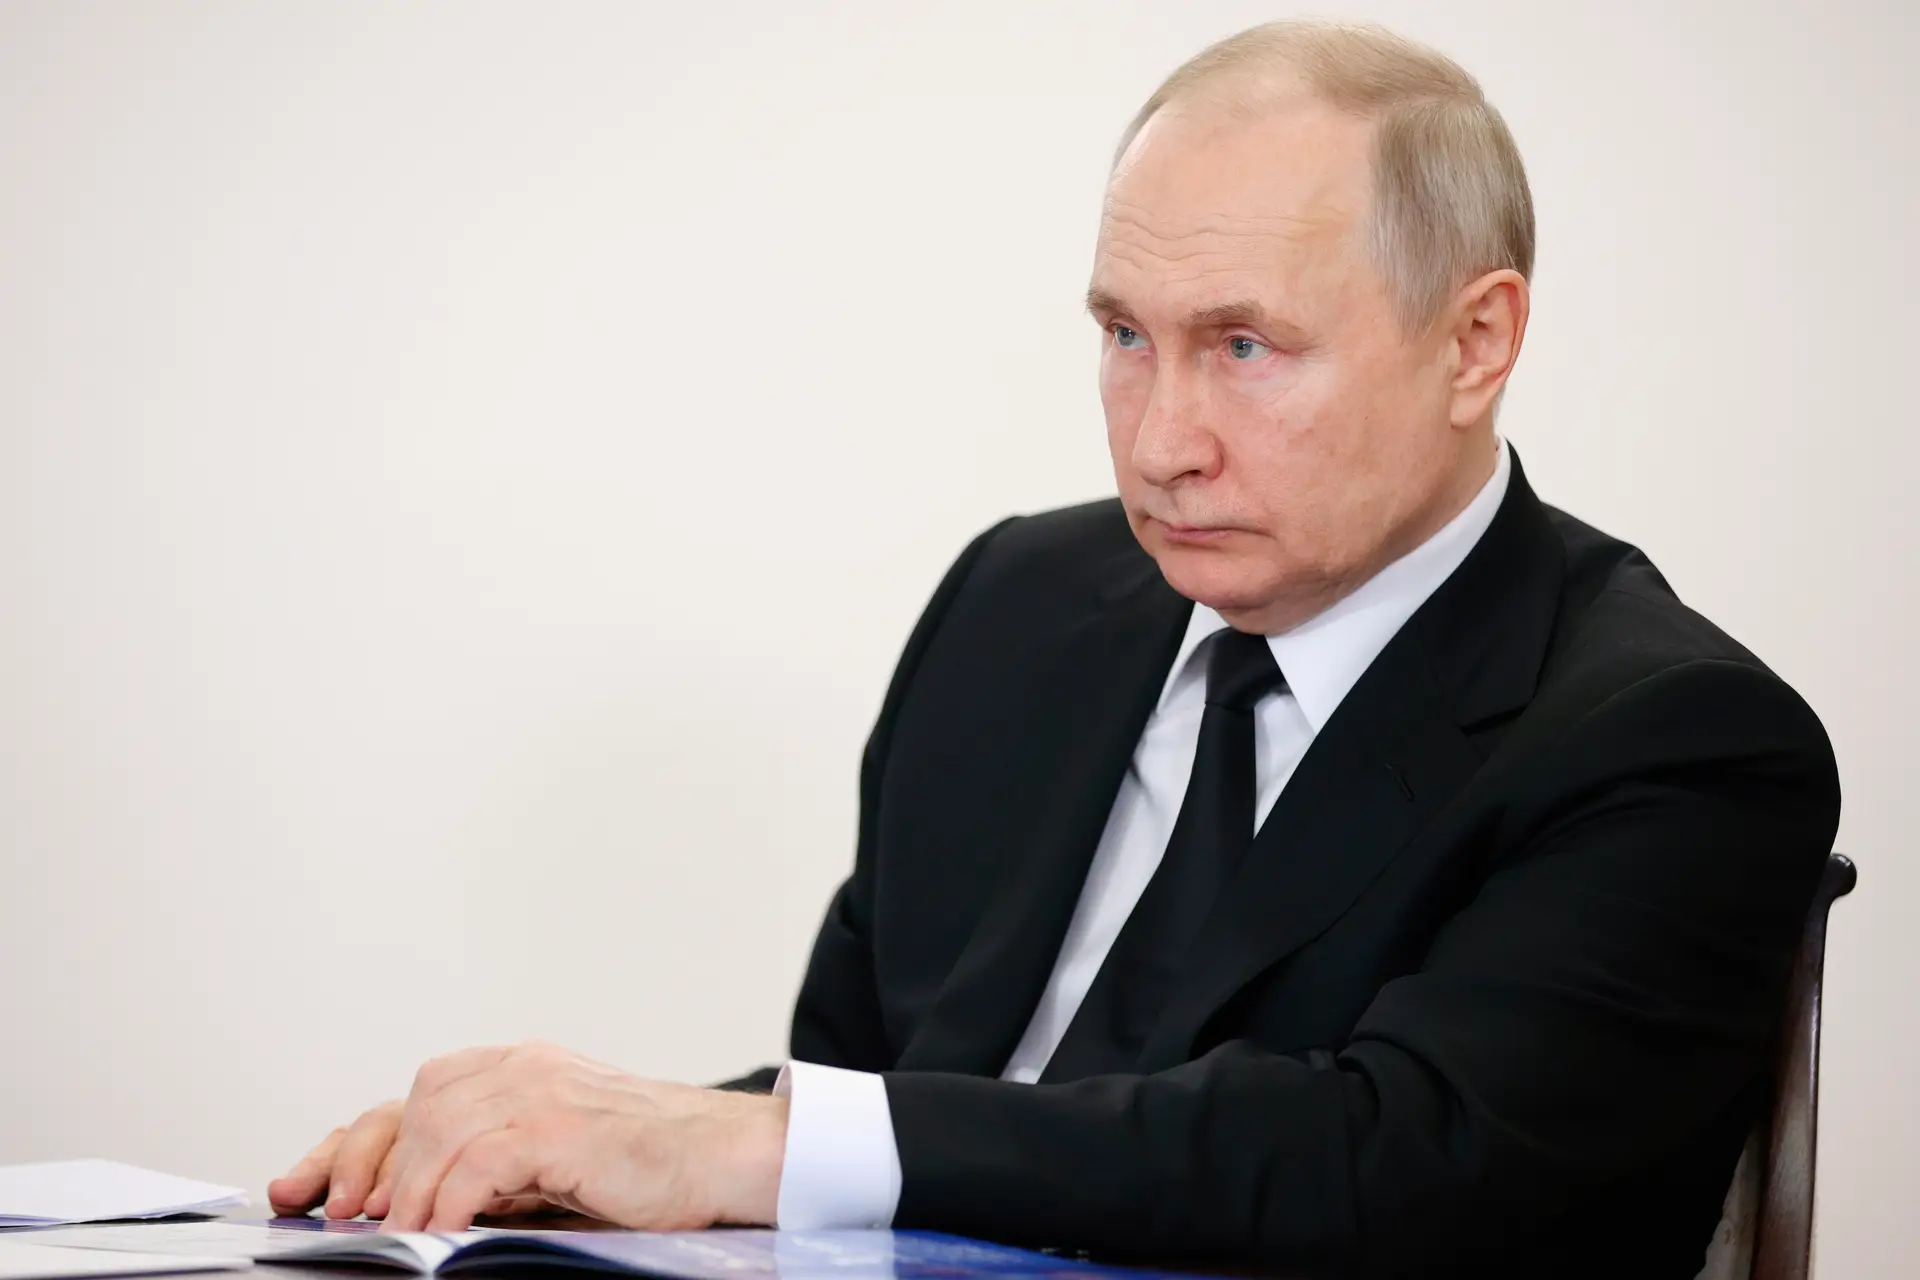 Vitória "é garantida, não tenho dúvidas", acredita o Presidente Putin